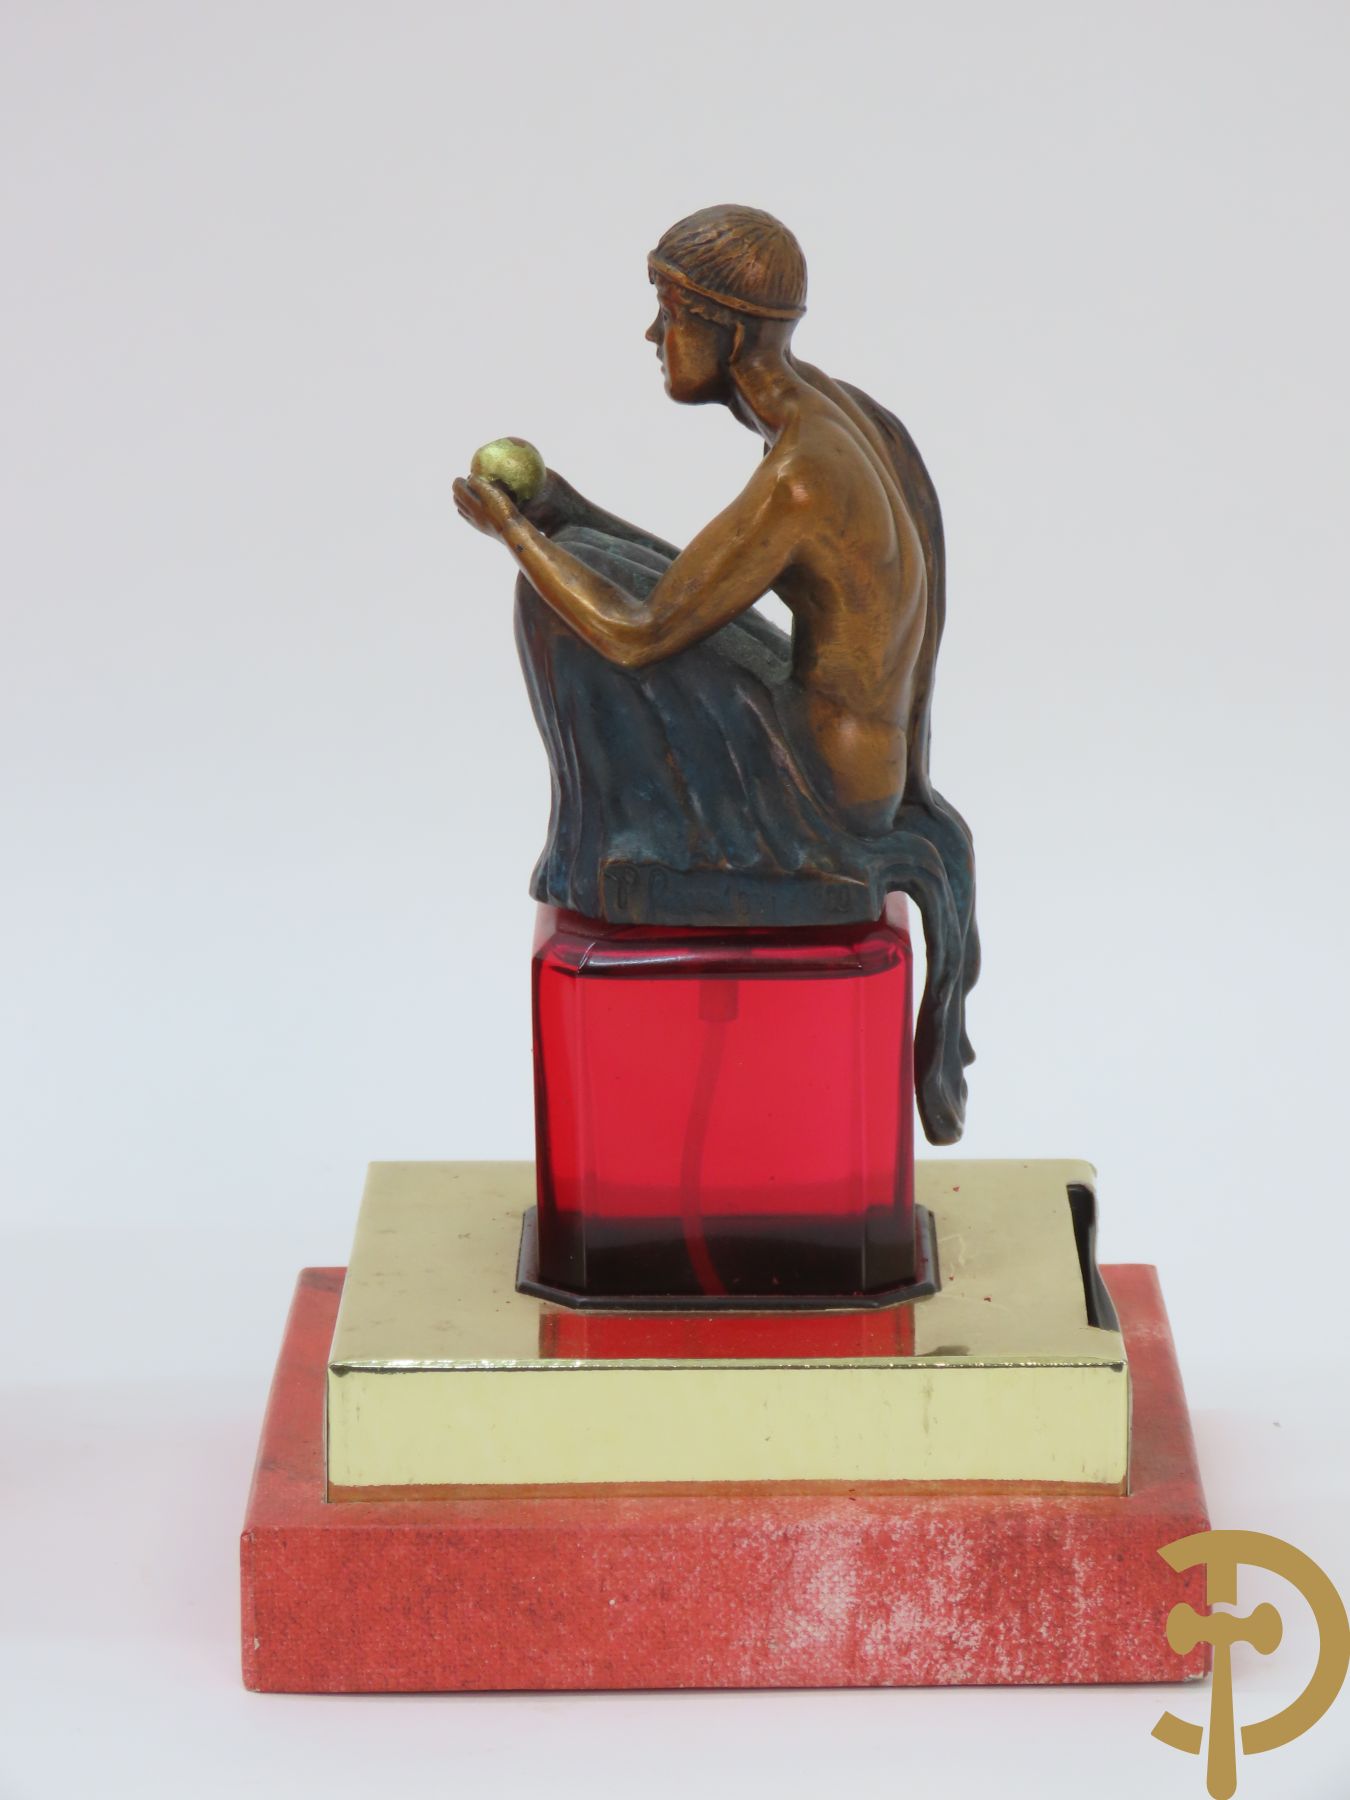 Parfumfacon met bronzen deksel in box, beperkte oplage van 831/7500 exemplaren, Les Beaux Arts Patrizia Guerresi